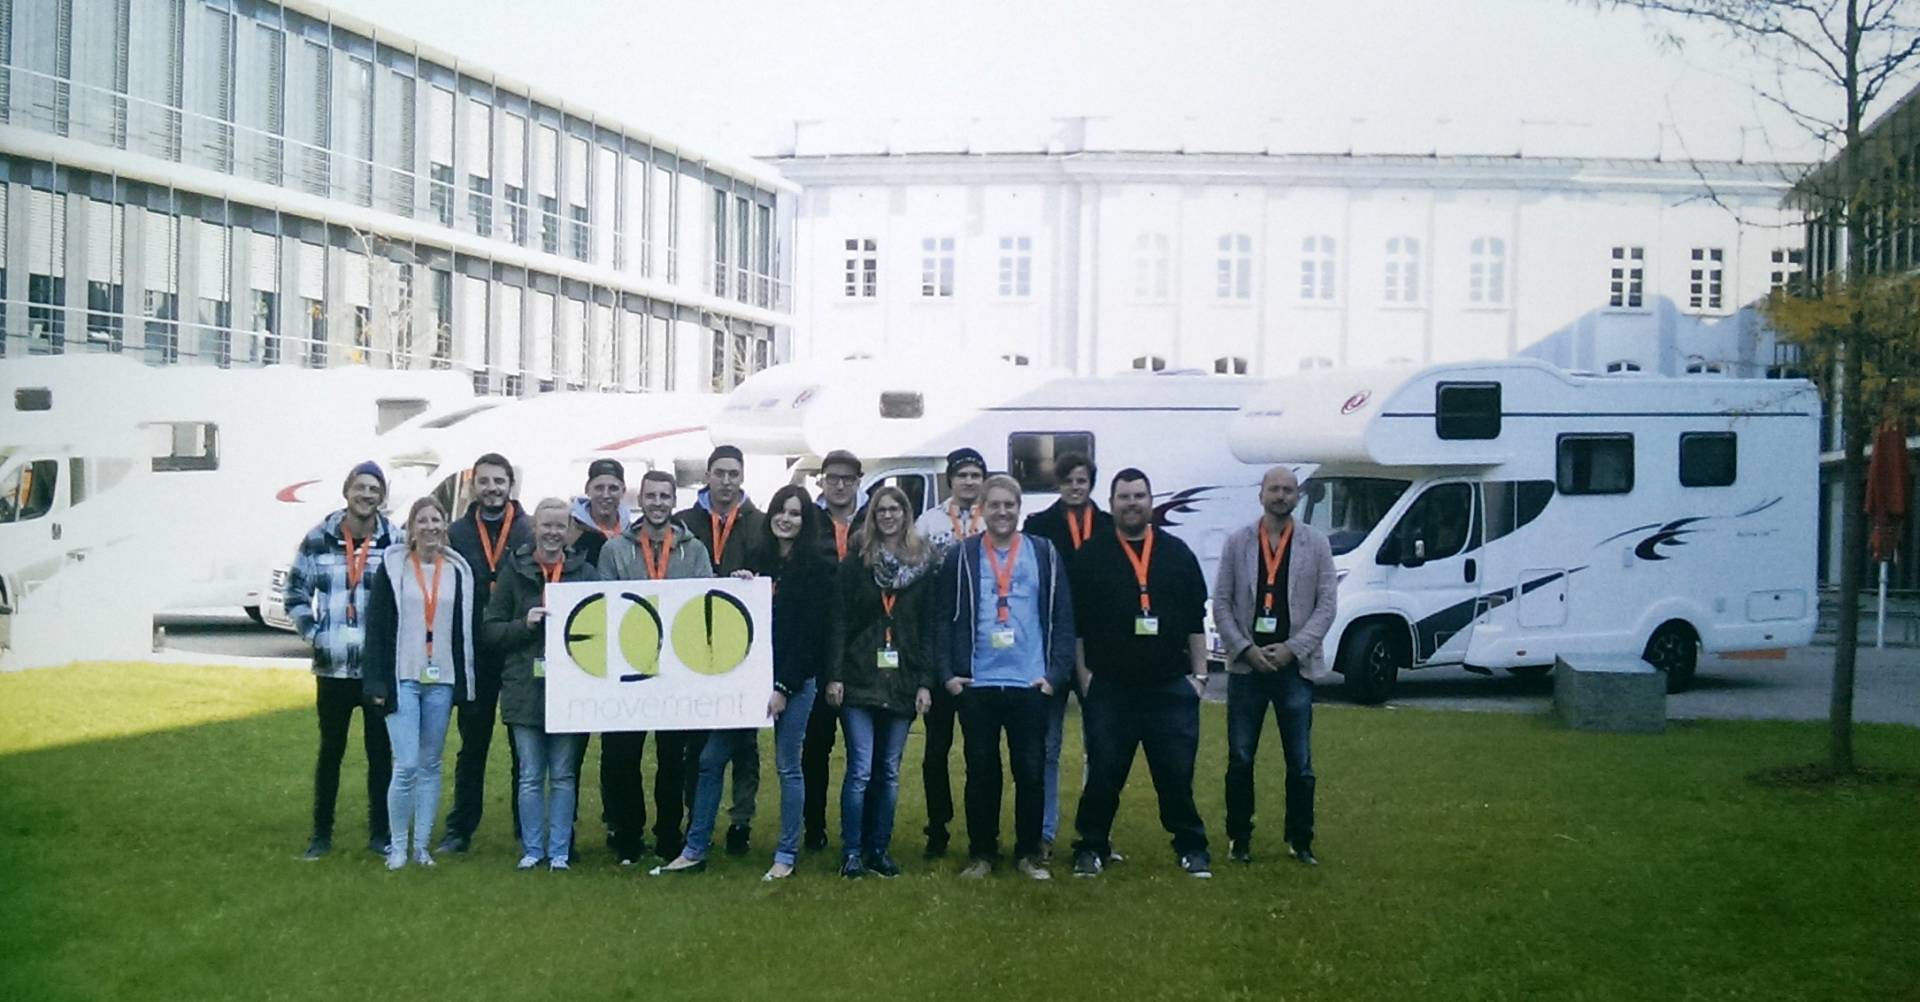 Eine Exkursion der besonderen Art: Das "ECO Movement"-Team mit Wohnmobilen beim Start auf dem Campus der Hochschule 